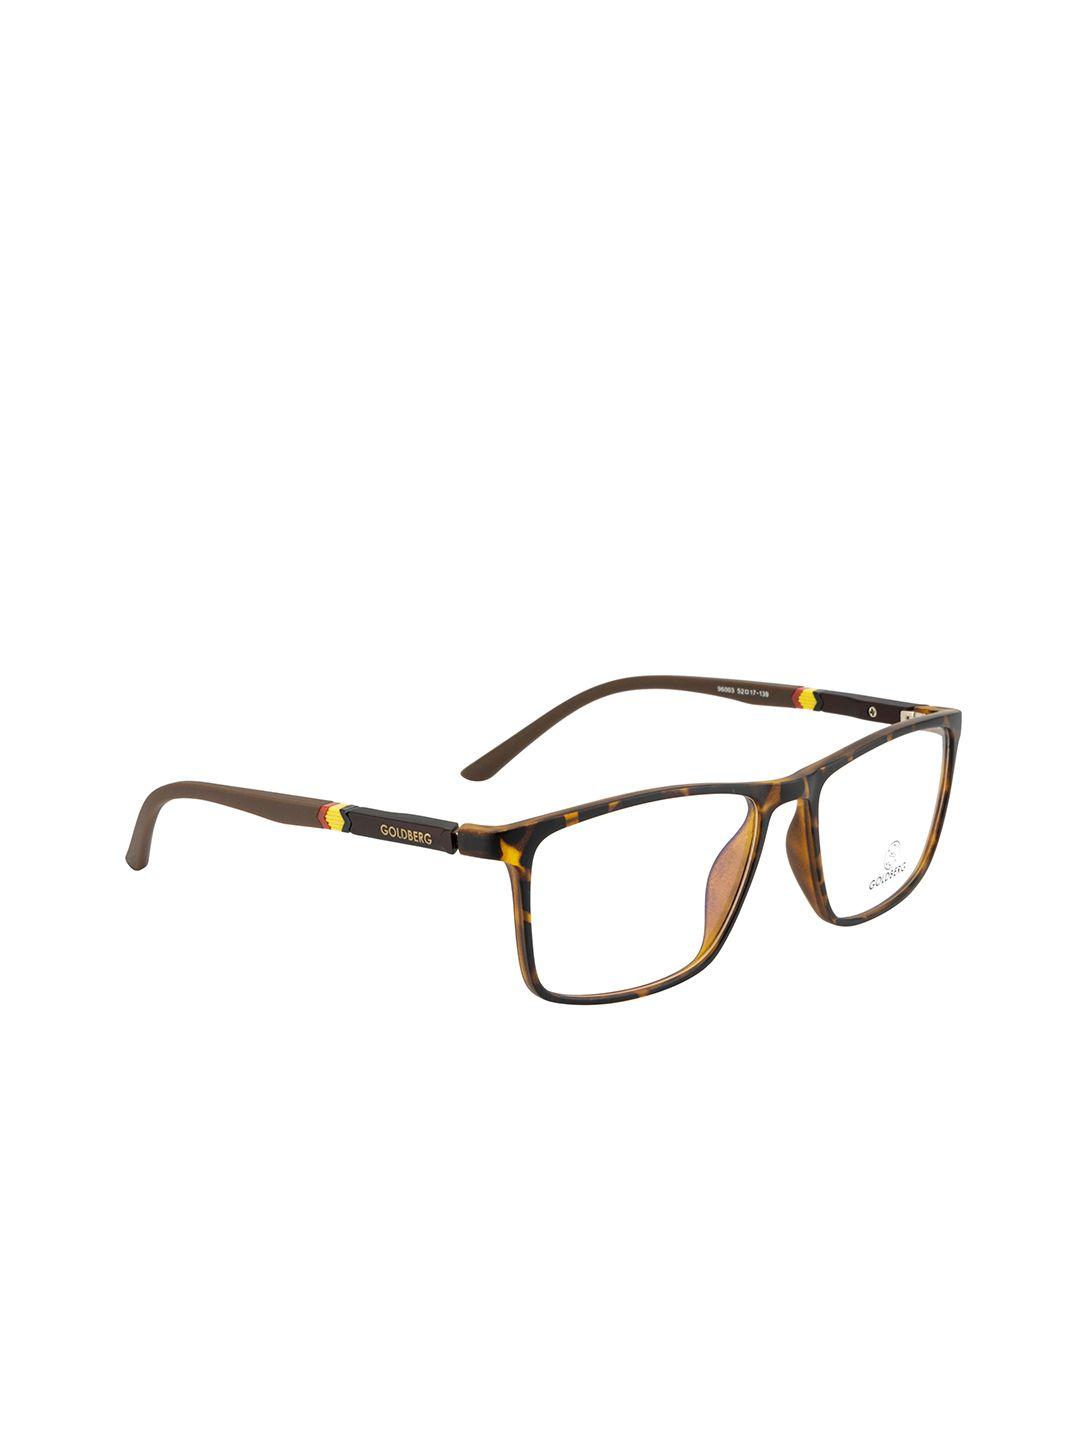 gold berg unisex brown & mustard full rim square frames eyeglasses